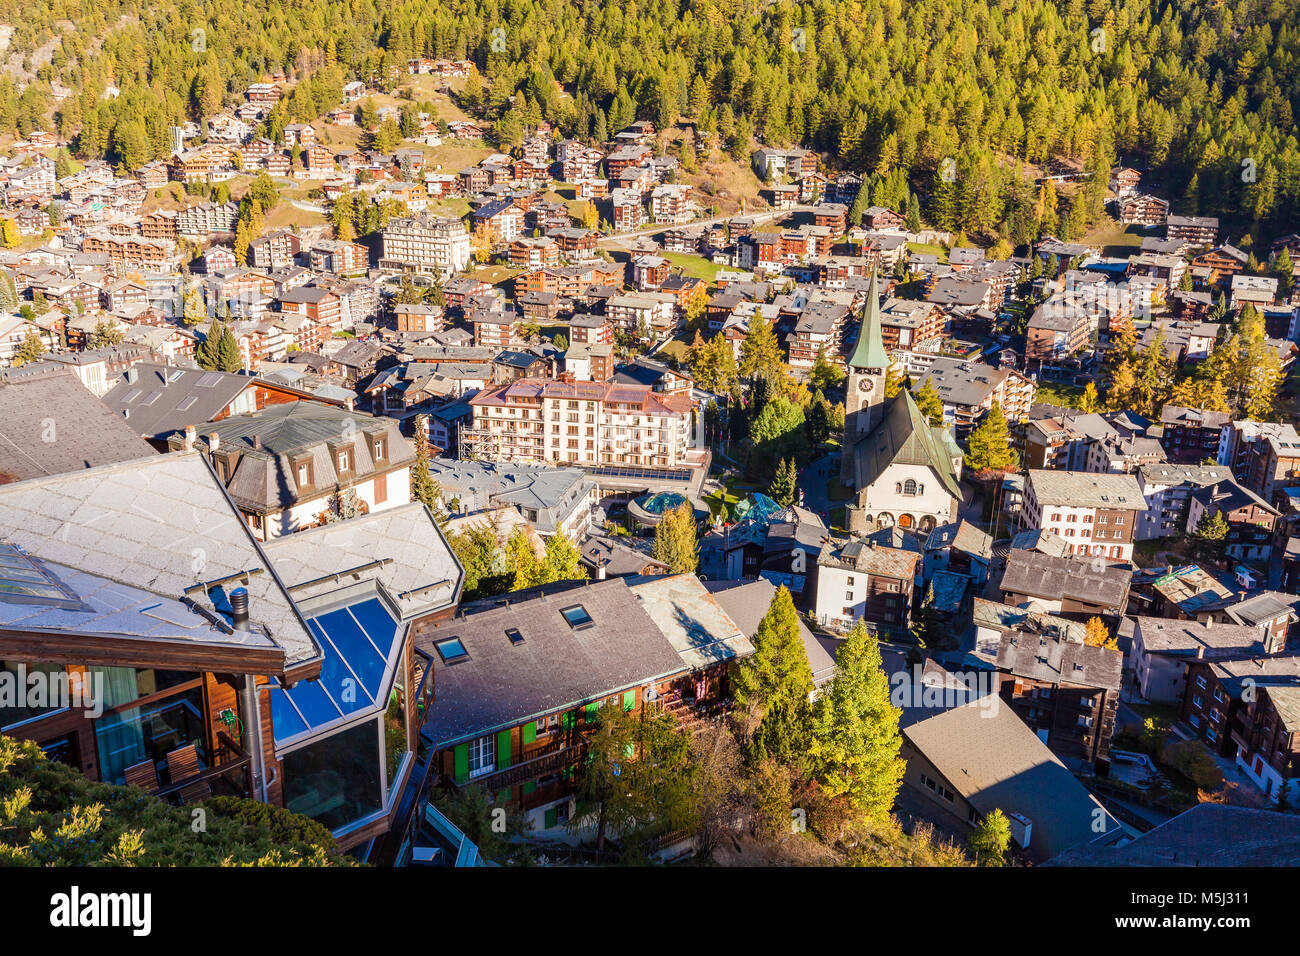 Schweiz, Kanton Wallis, Zermatt, Ortsansicht, Kirche, hotel, chalet, Ferienhäuser, Ferienwohnungen Foto Stock